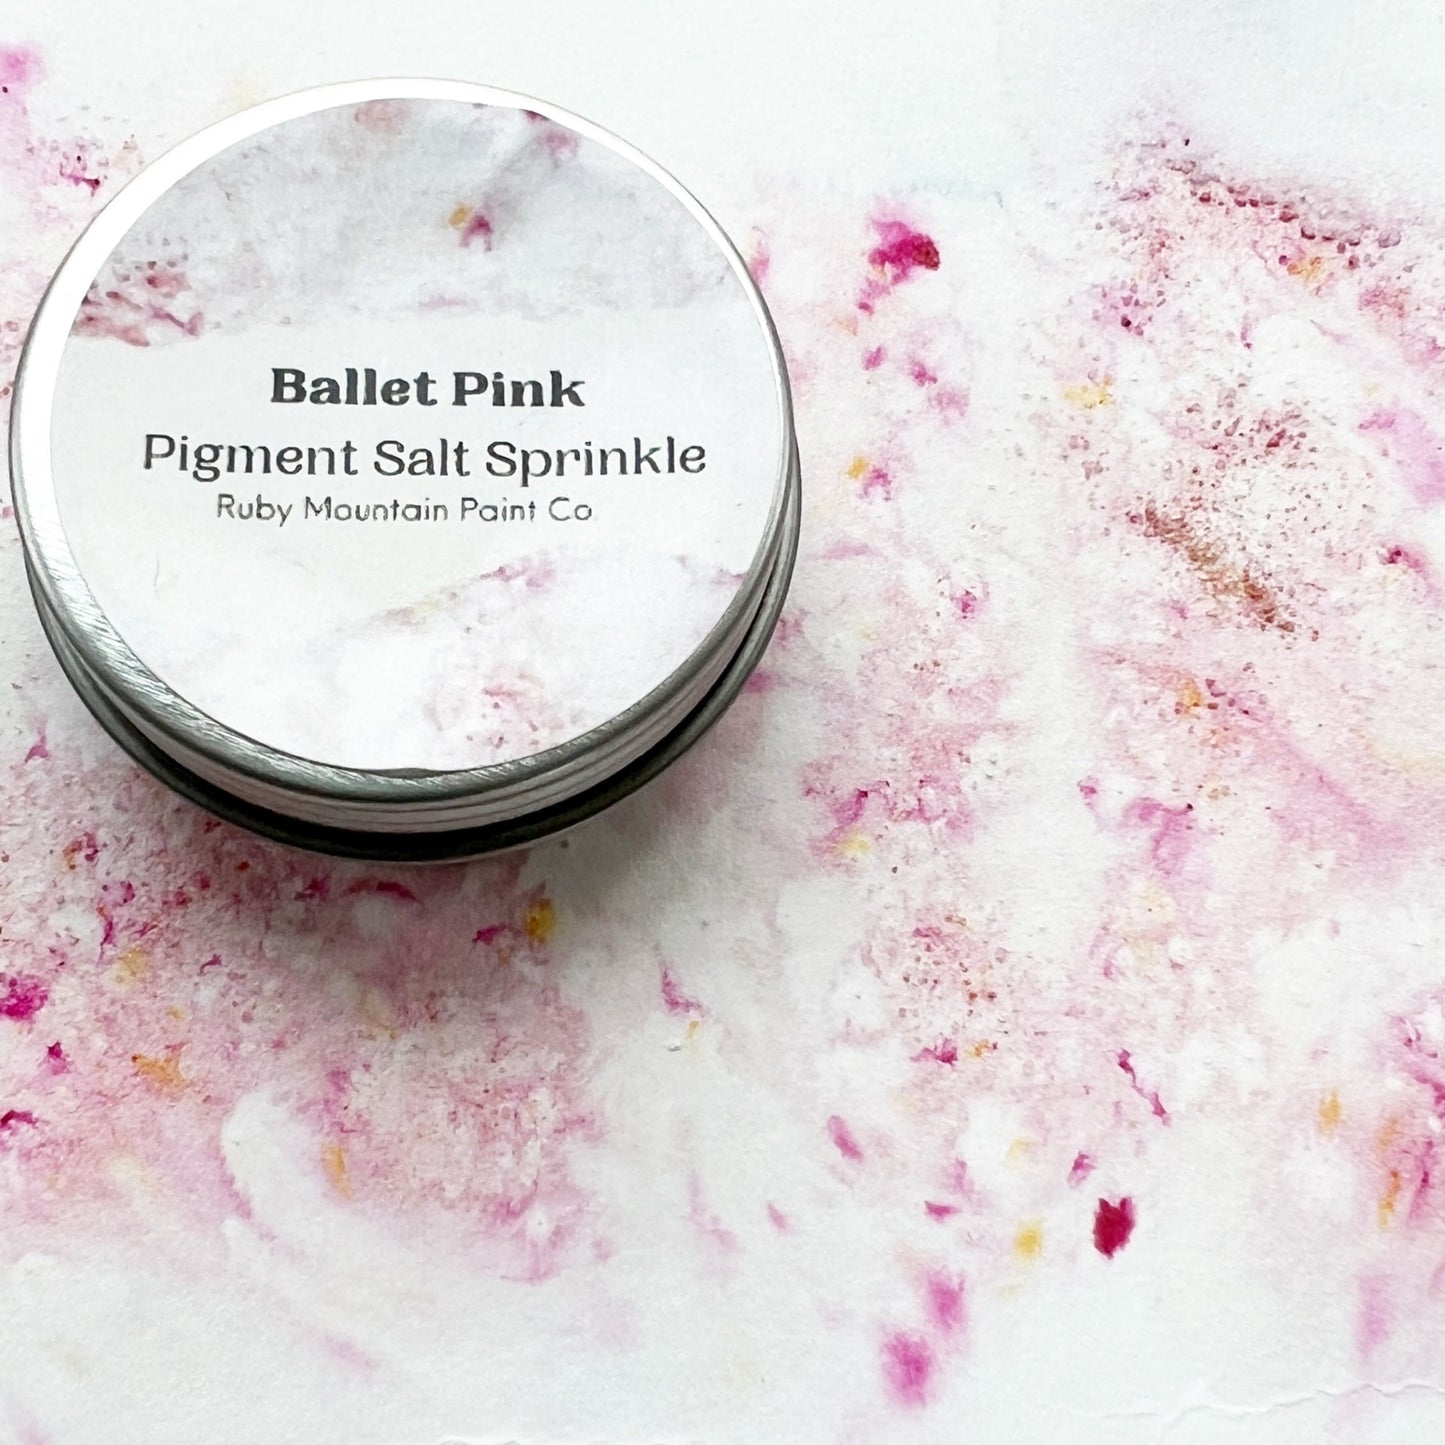 Ballet Pink Pigment Salt Sprinkle